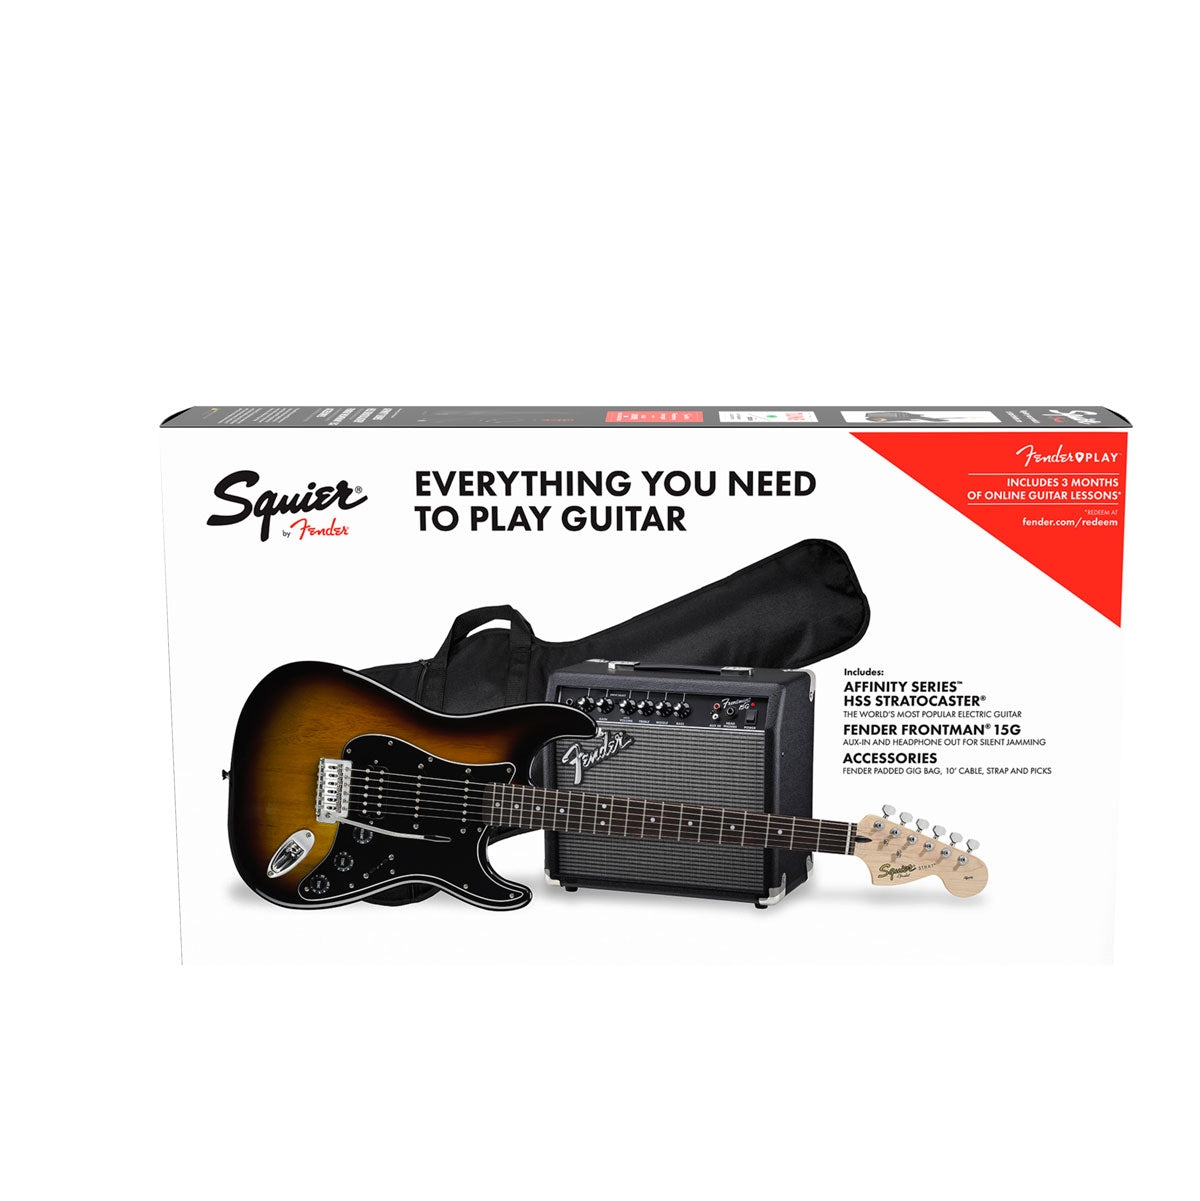 Paquete Guitarra Elect. Fender Pk Af Strat Hss Bsb Gb 120v, 0371824032